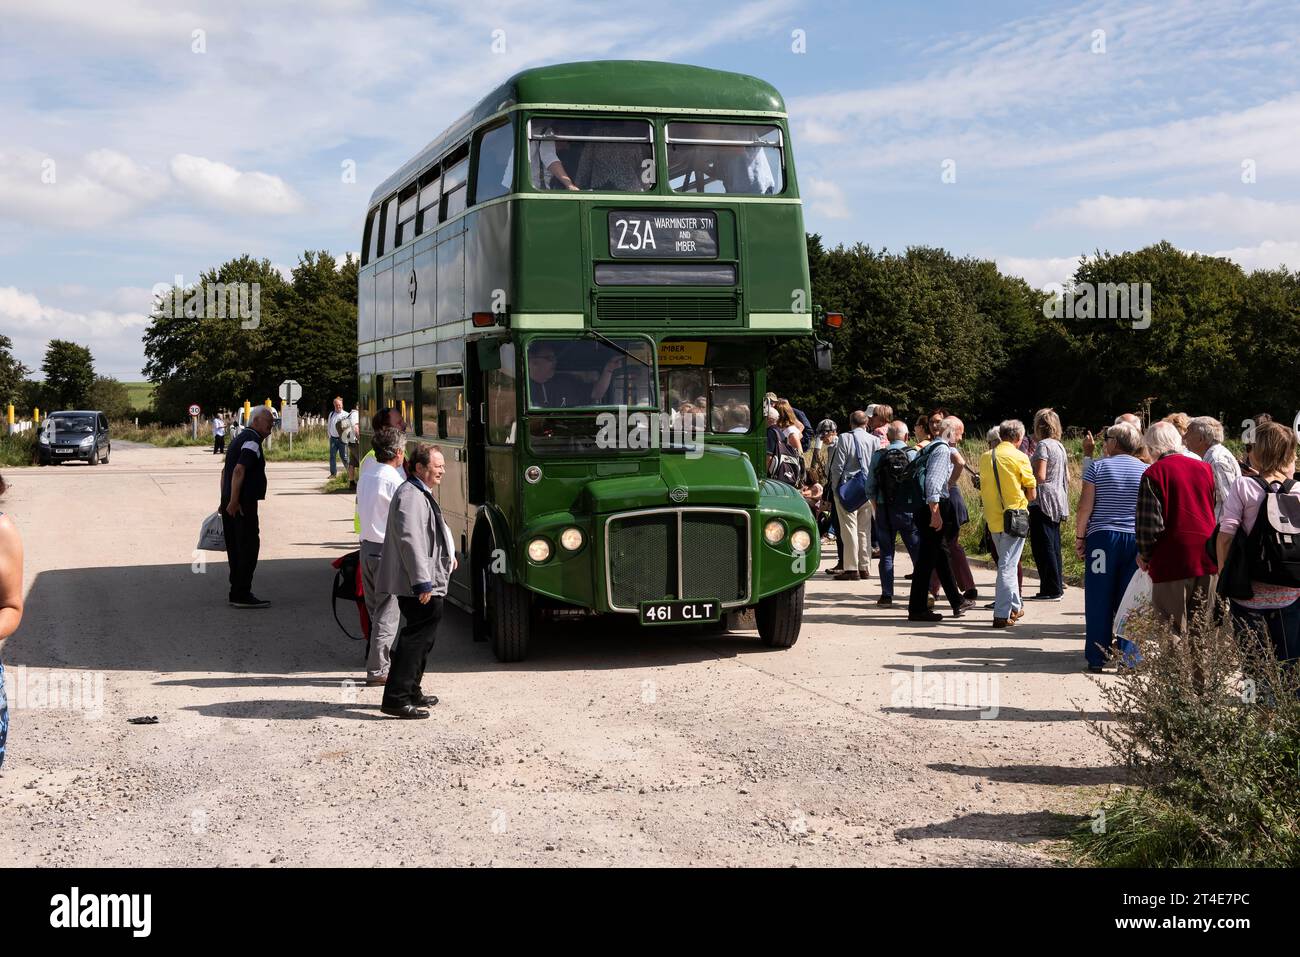 Imberbus, Londres transport routemaster bus Warminster à Imber et au-delà de 2017 jours de course Banque D'Images